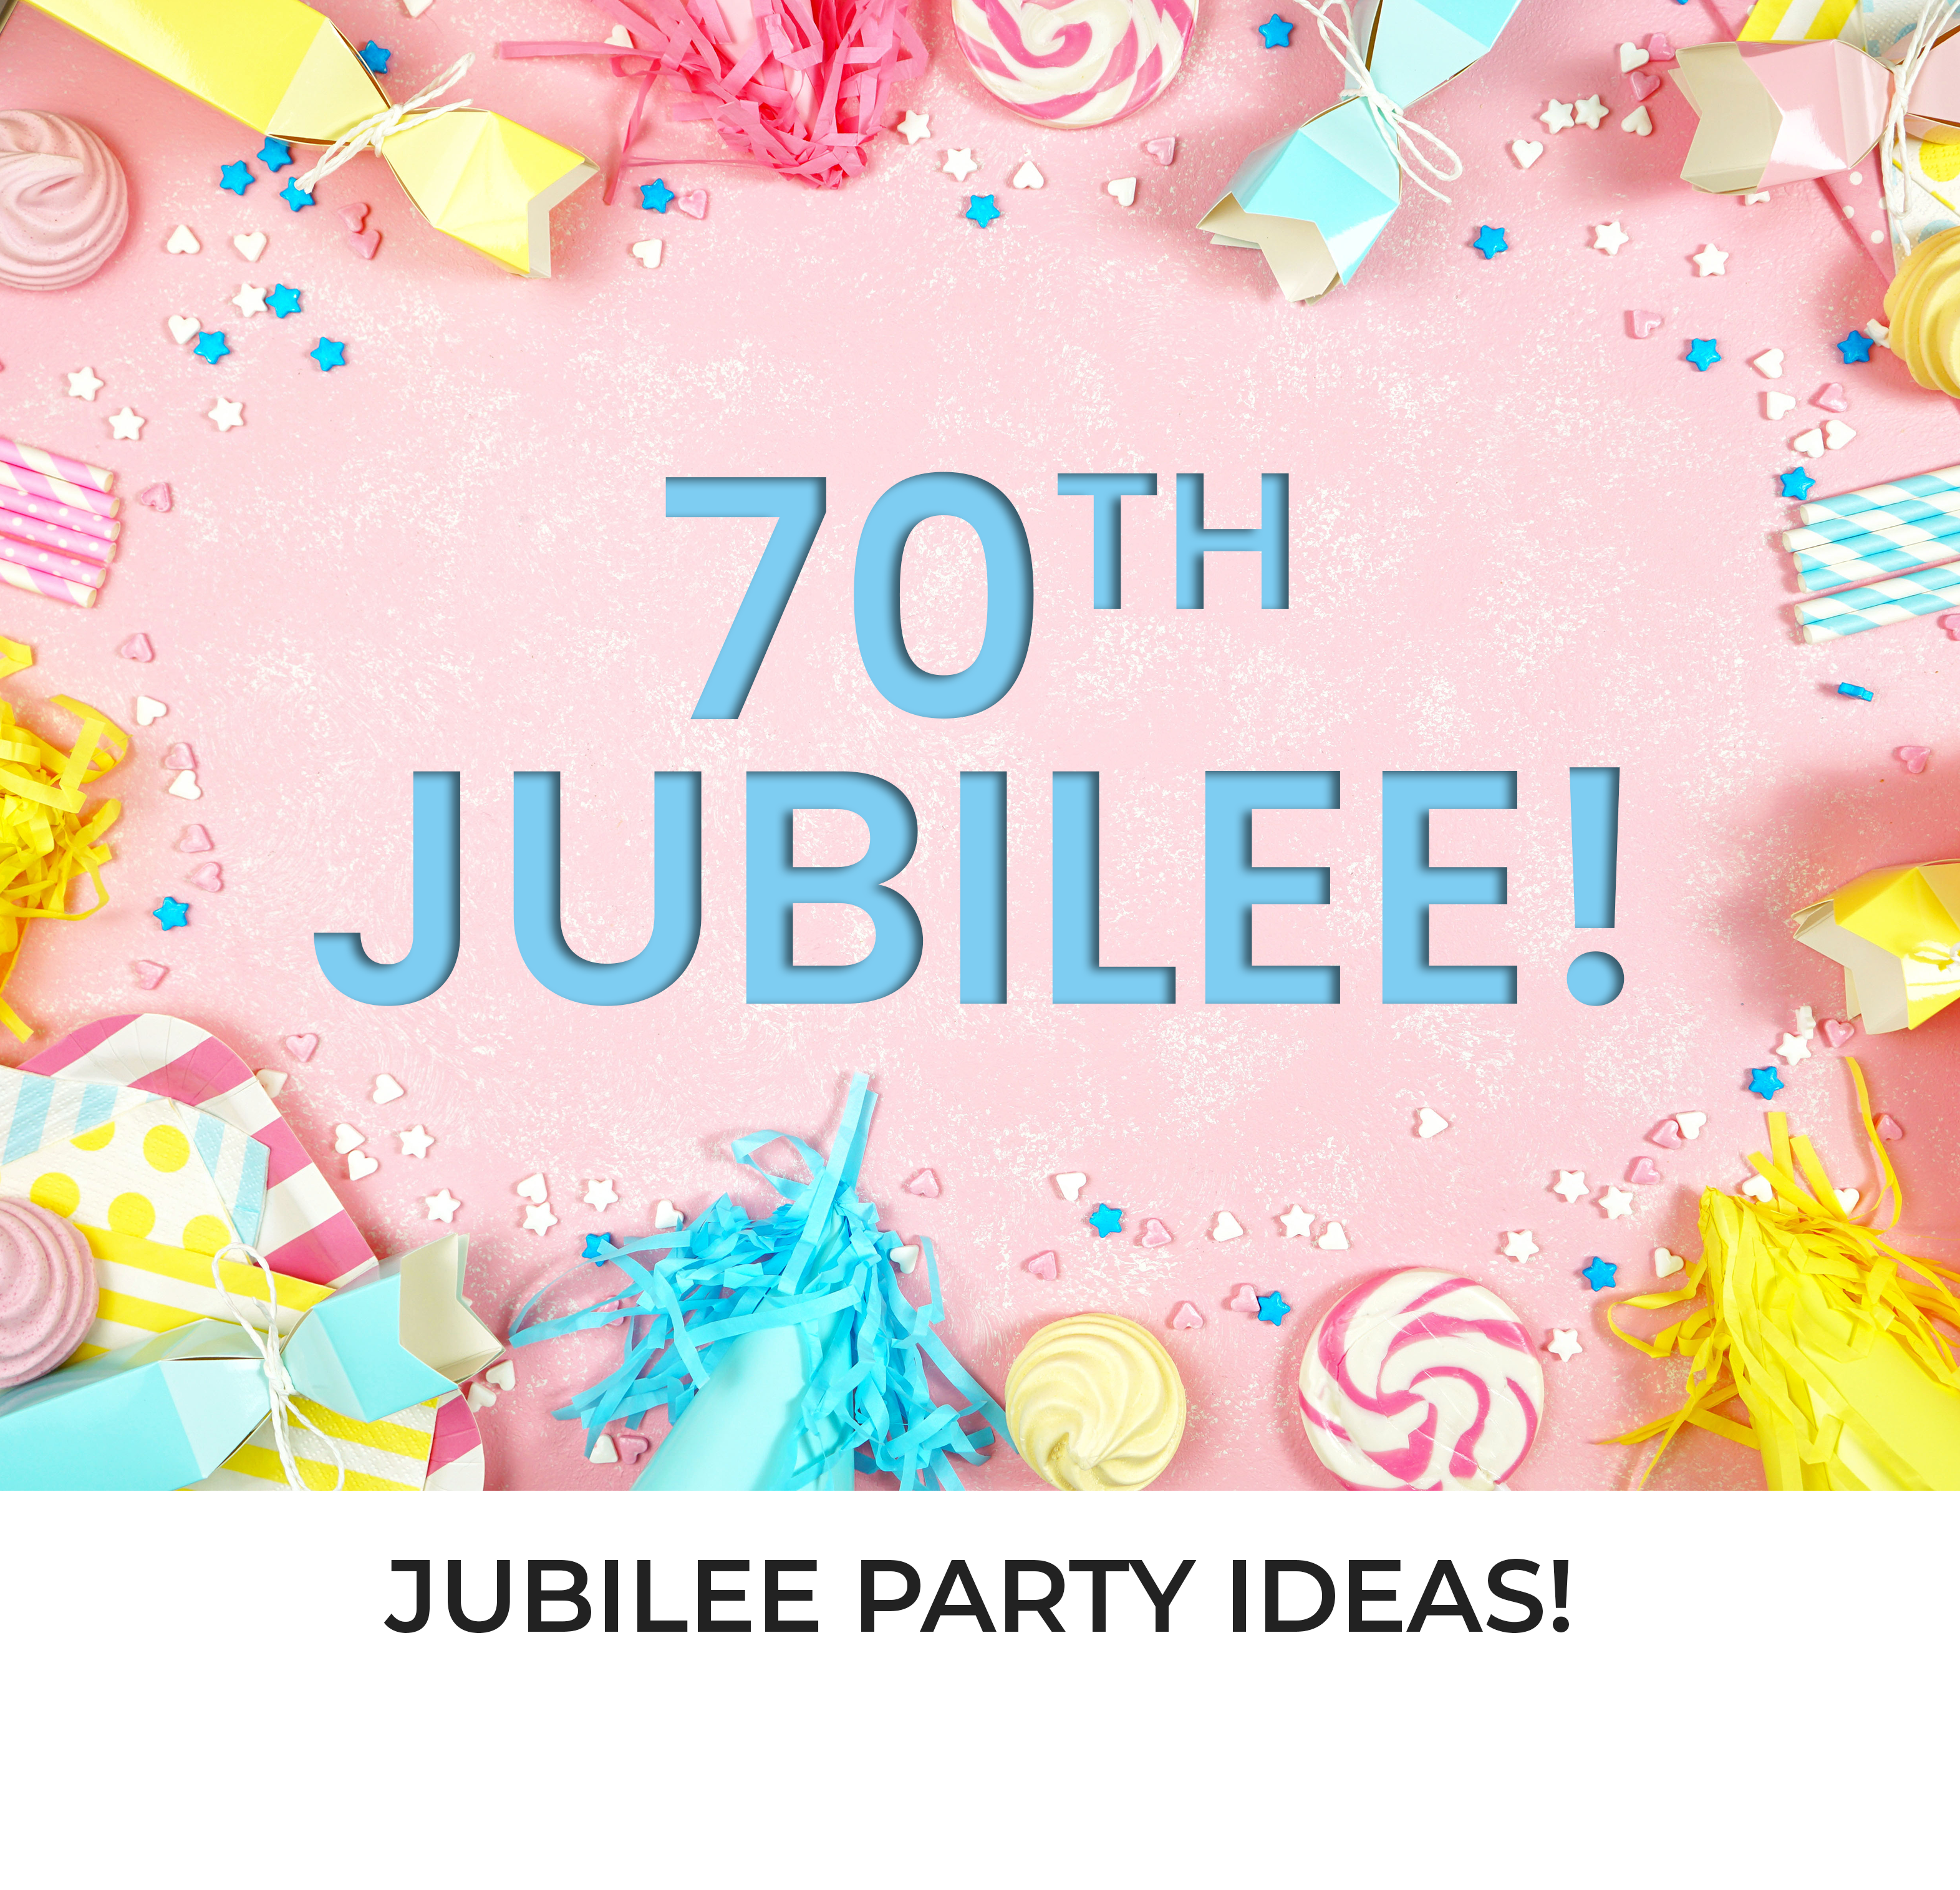 Easy Jubilee Party Ideas!